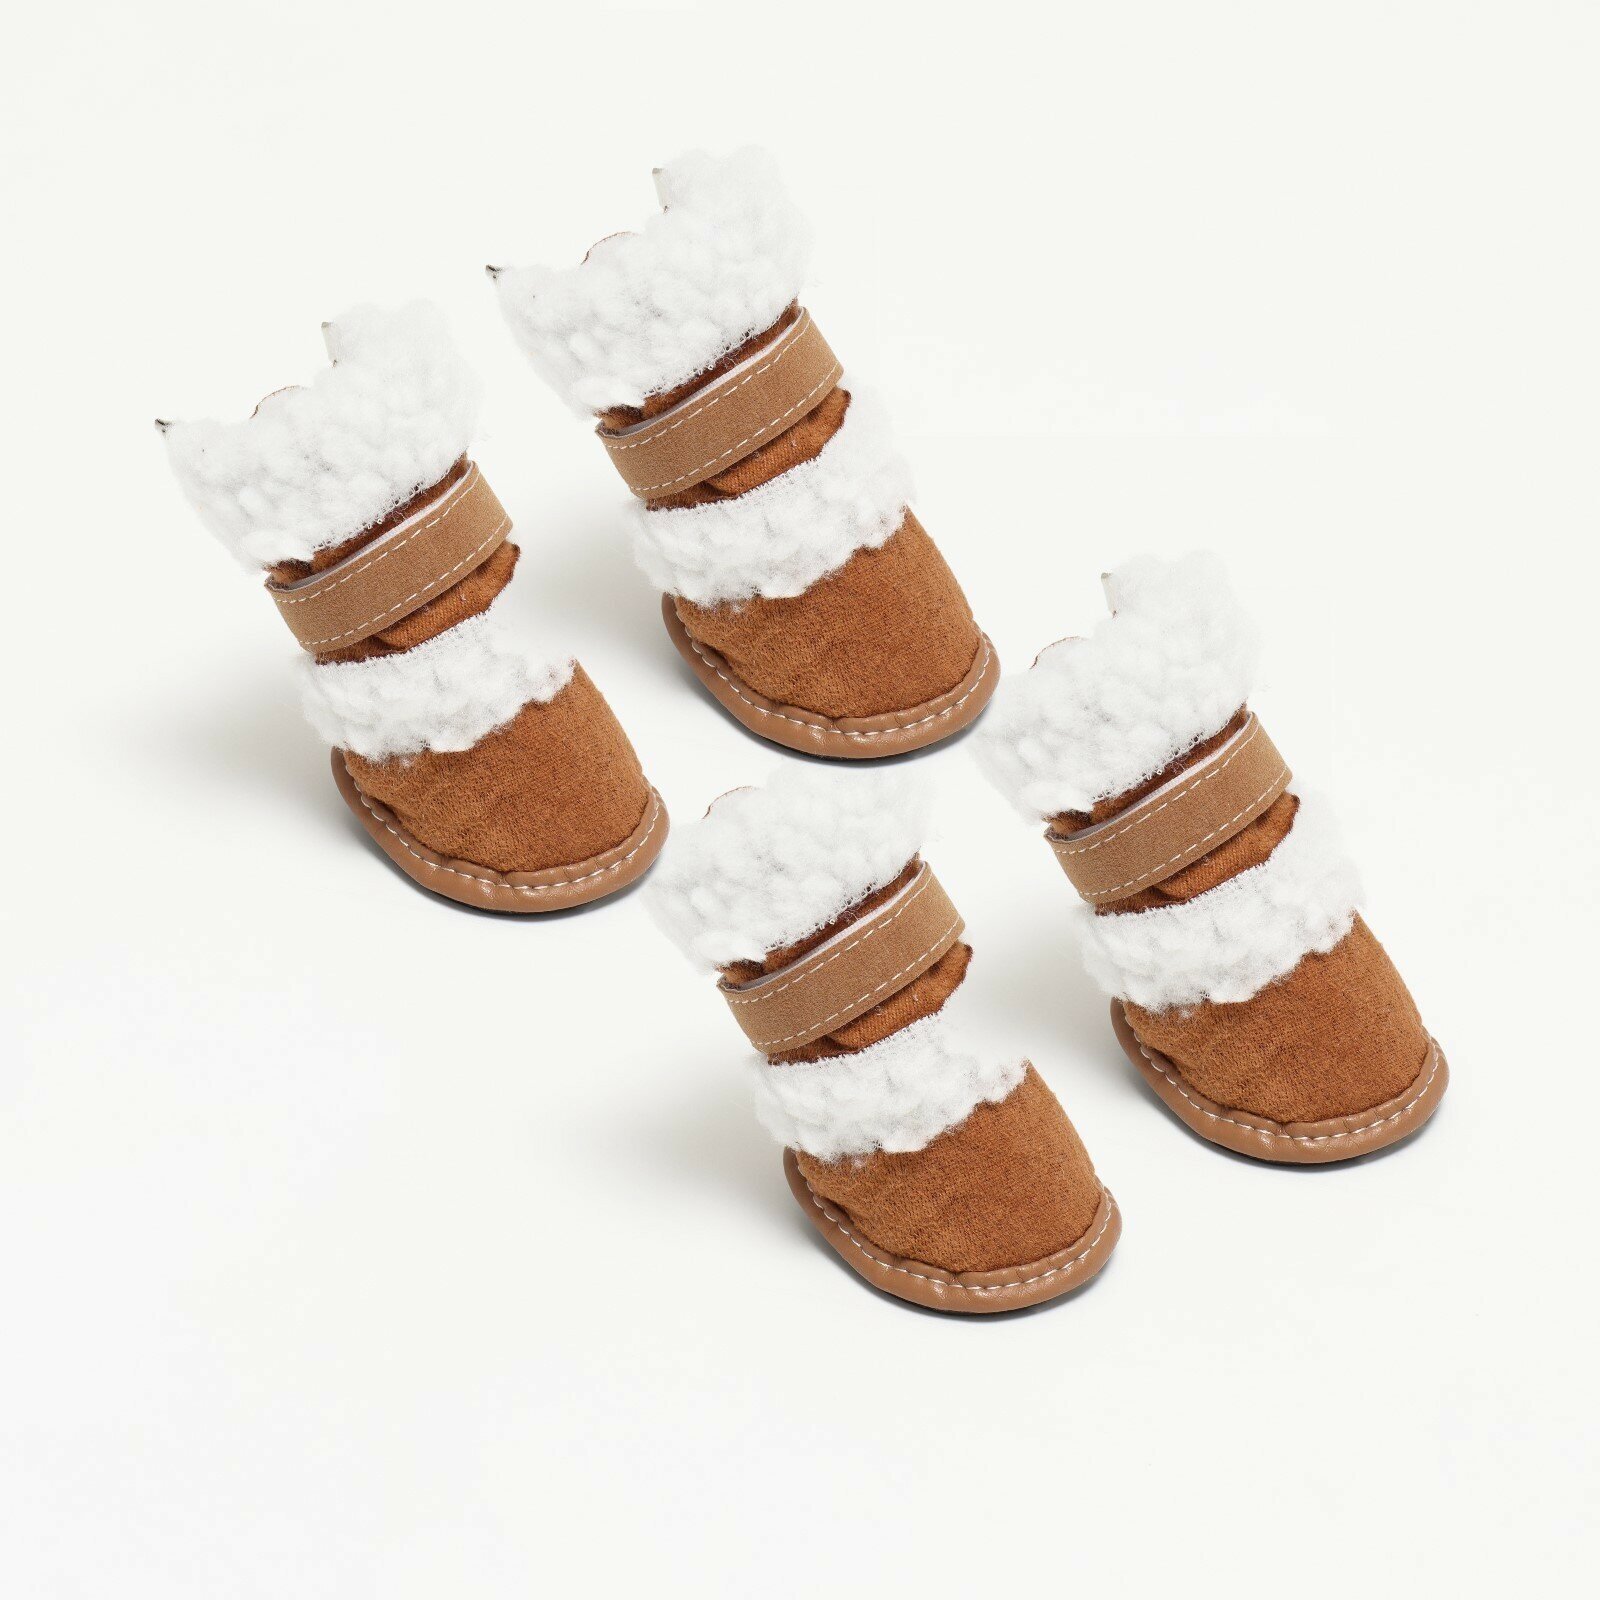 Ботинки "Унты", набор 4 шт, размер 4 (подошва 6,5 х 4,7 см), коричневые 1121107